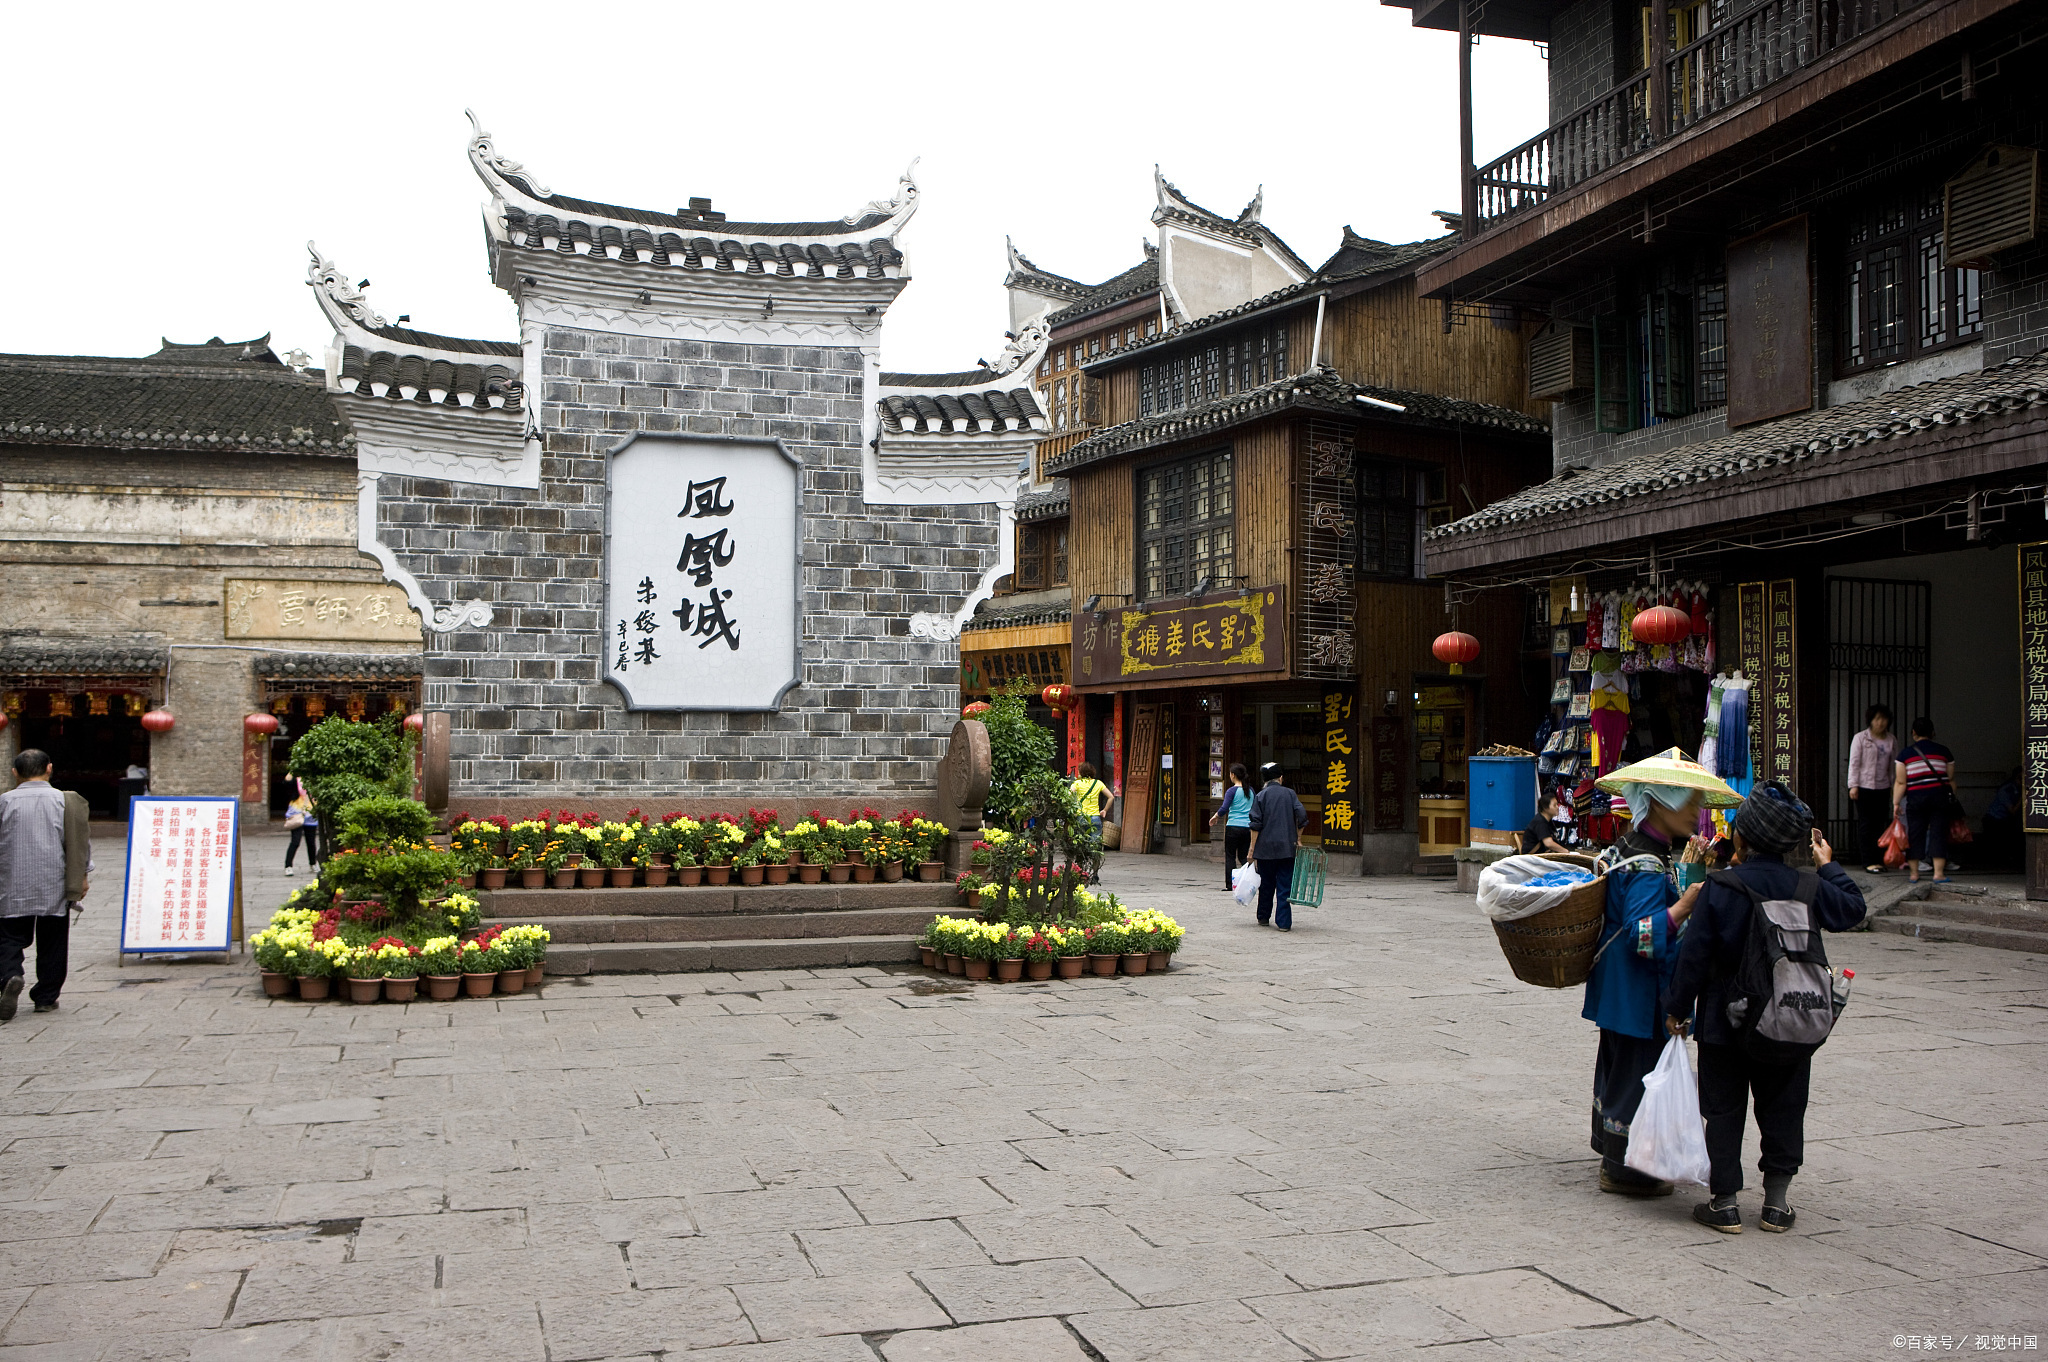 诸葛古镇,位于陕西省汉中市勉县武侯镇,是一个充满历史底蕴和文化氛围